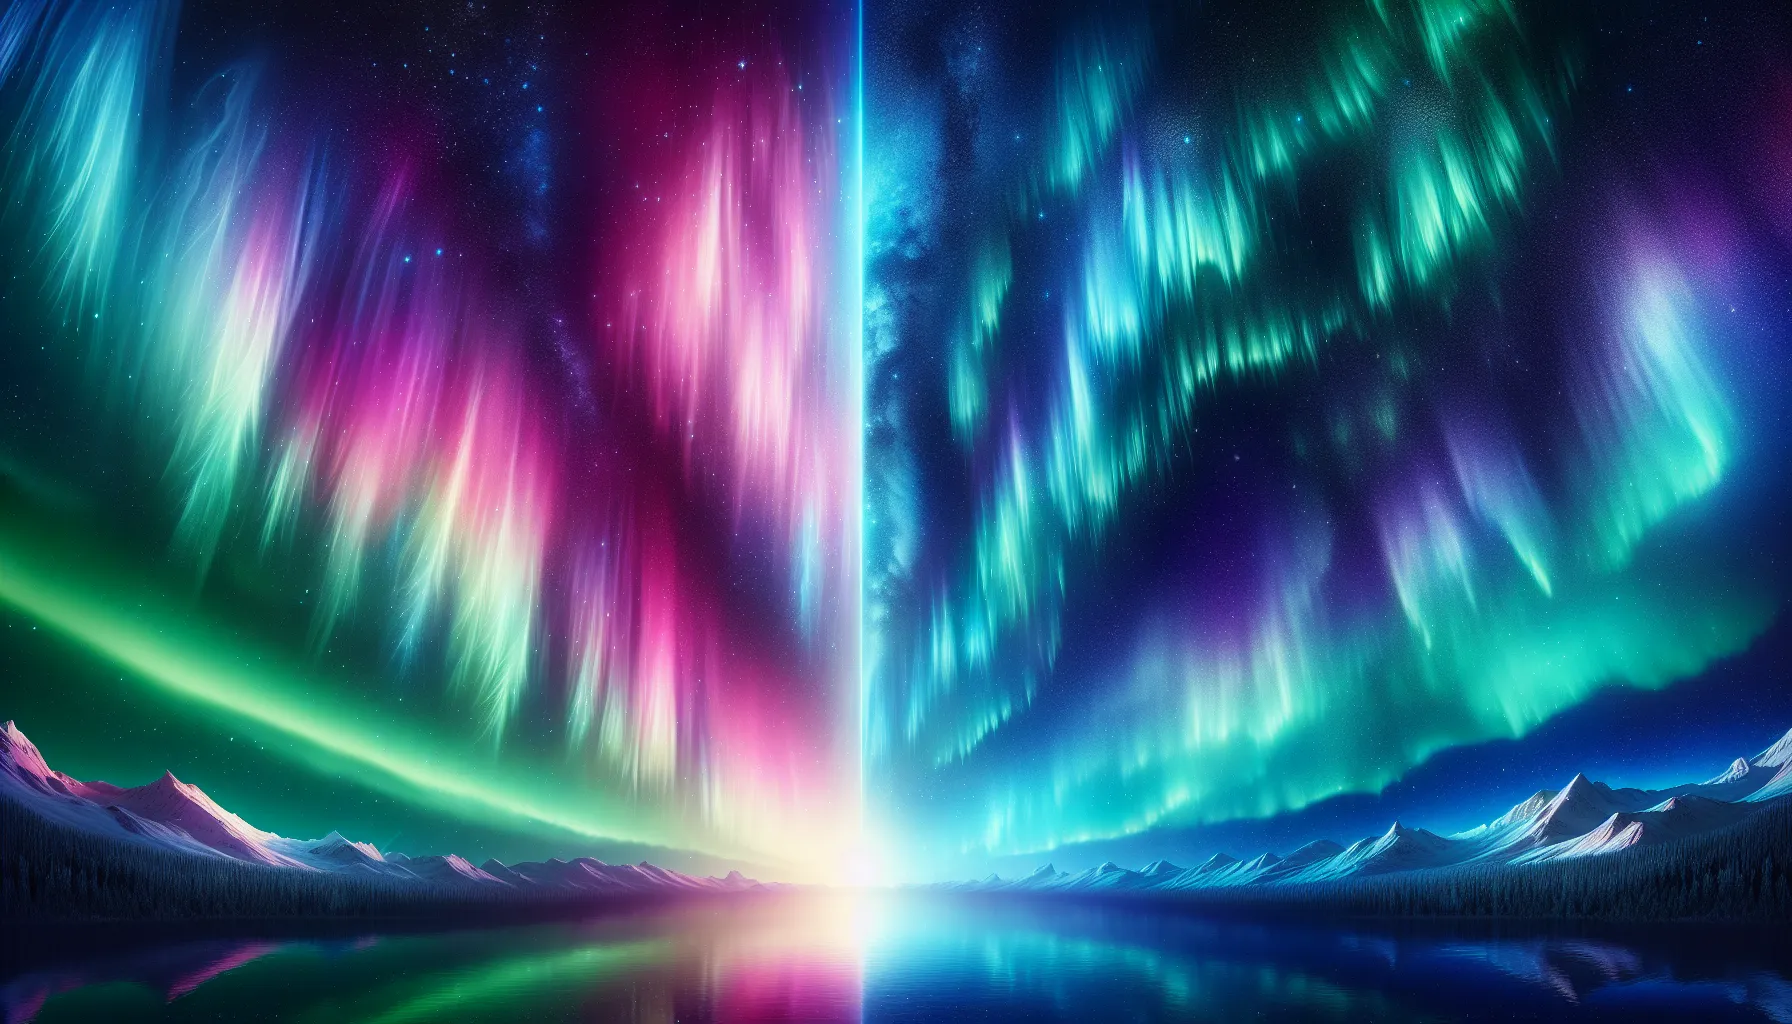 Aurora Boreal vs. Austral: Comparando os Fenômenos

A aurora boreal e a aurora austral são dois fenômenos naturais espetaculares que ocorrem nas regiões polares da Terra. Embora sejam semelhantes em muitos aspectos, também existem diferenças notáveis entre eles.

A aurora boreal, também conhecida como luzes do norte, ocorre no hemisfério